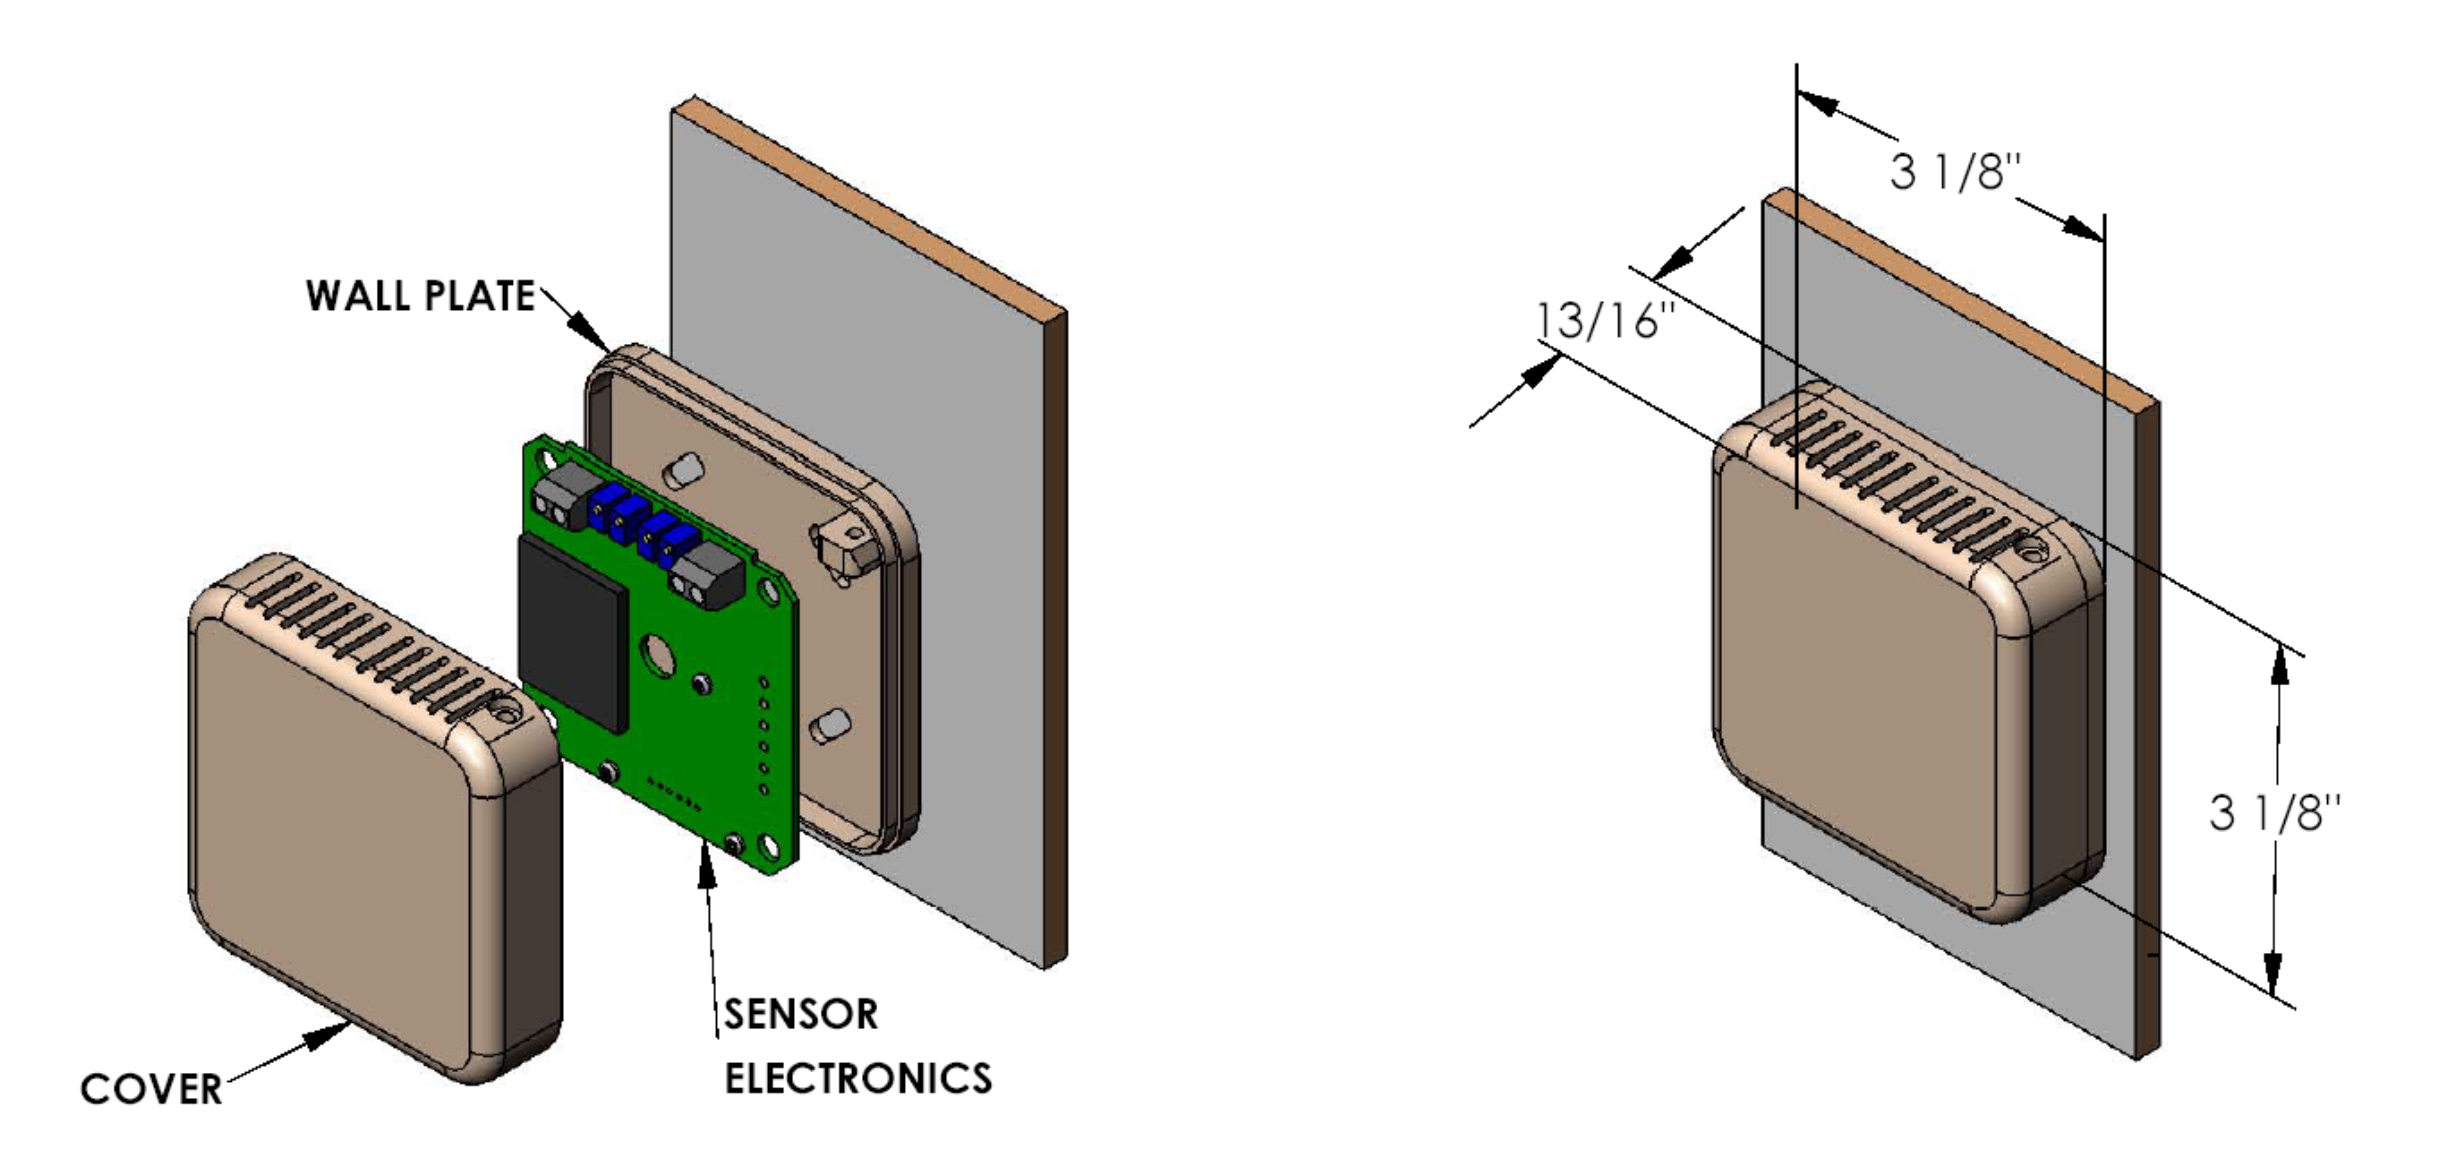 Wall mount interior HVAC temperature sensor Details